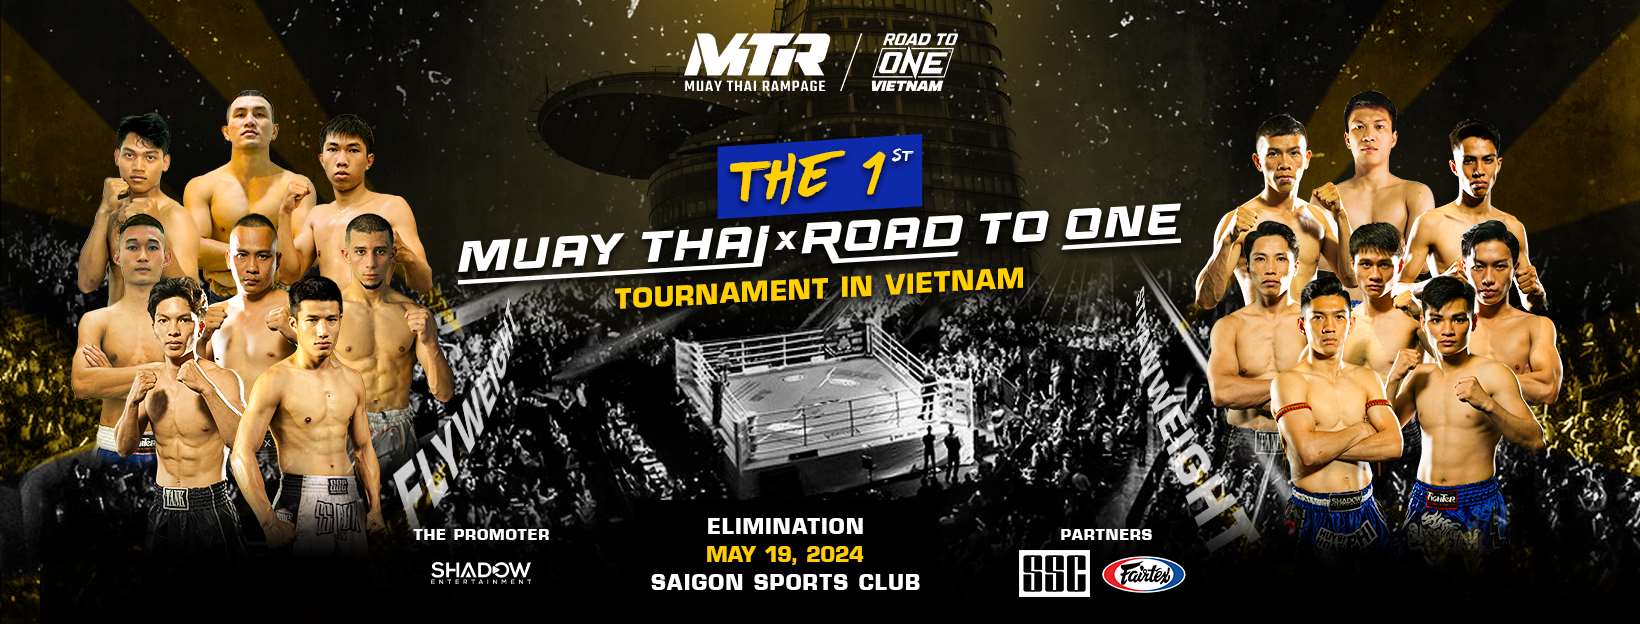 16 võ sĩ Muay Thai xuất sắc nhất tại Việt Nam sẽ tham dự giải đấu tuyển chọn để giành vé dự ONE Championship trong tương lai. Ảnh: SSC